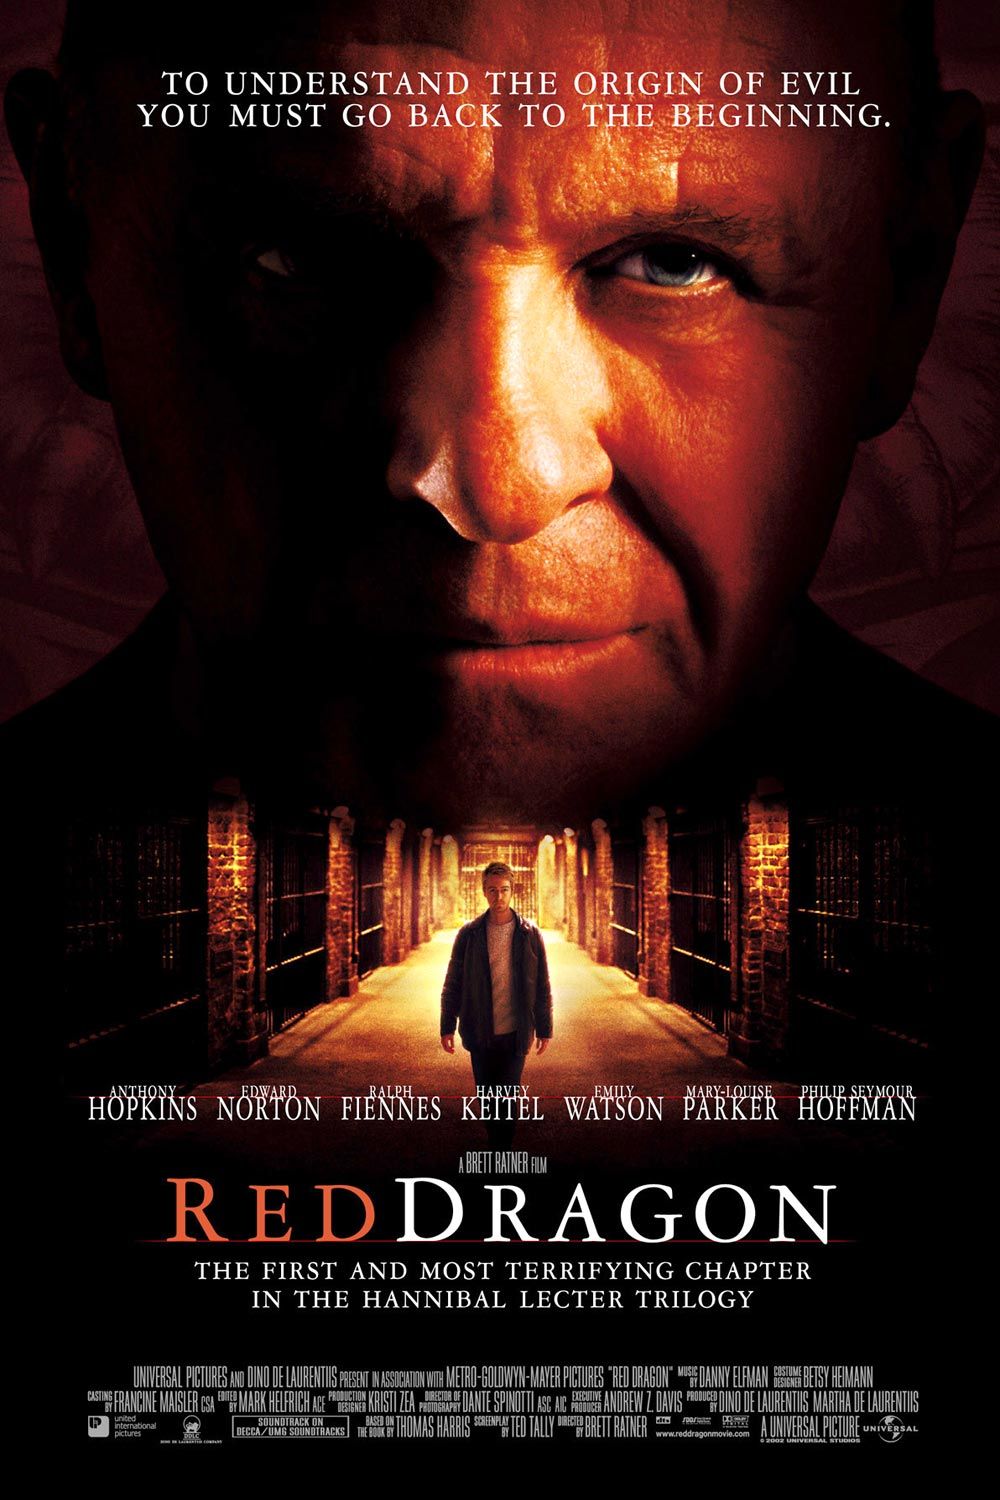 Постер - Красный дракон: 1000x1500 / 197 Кб